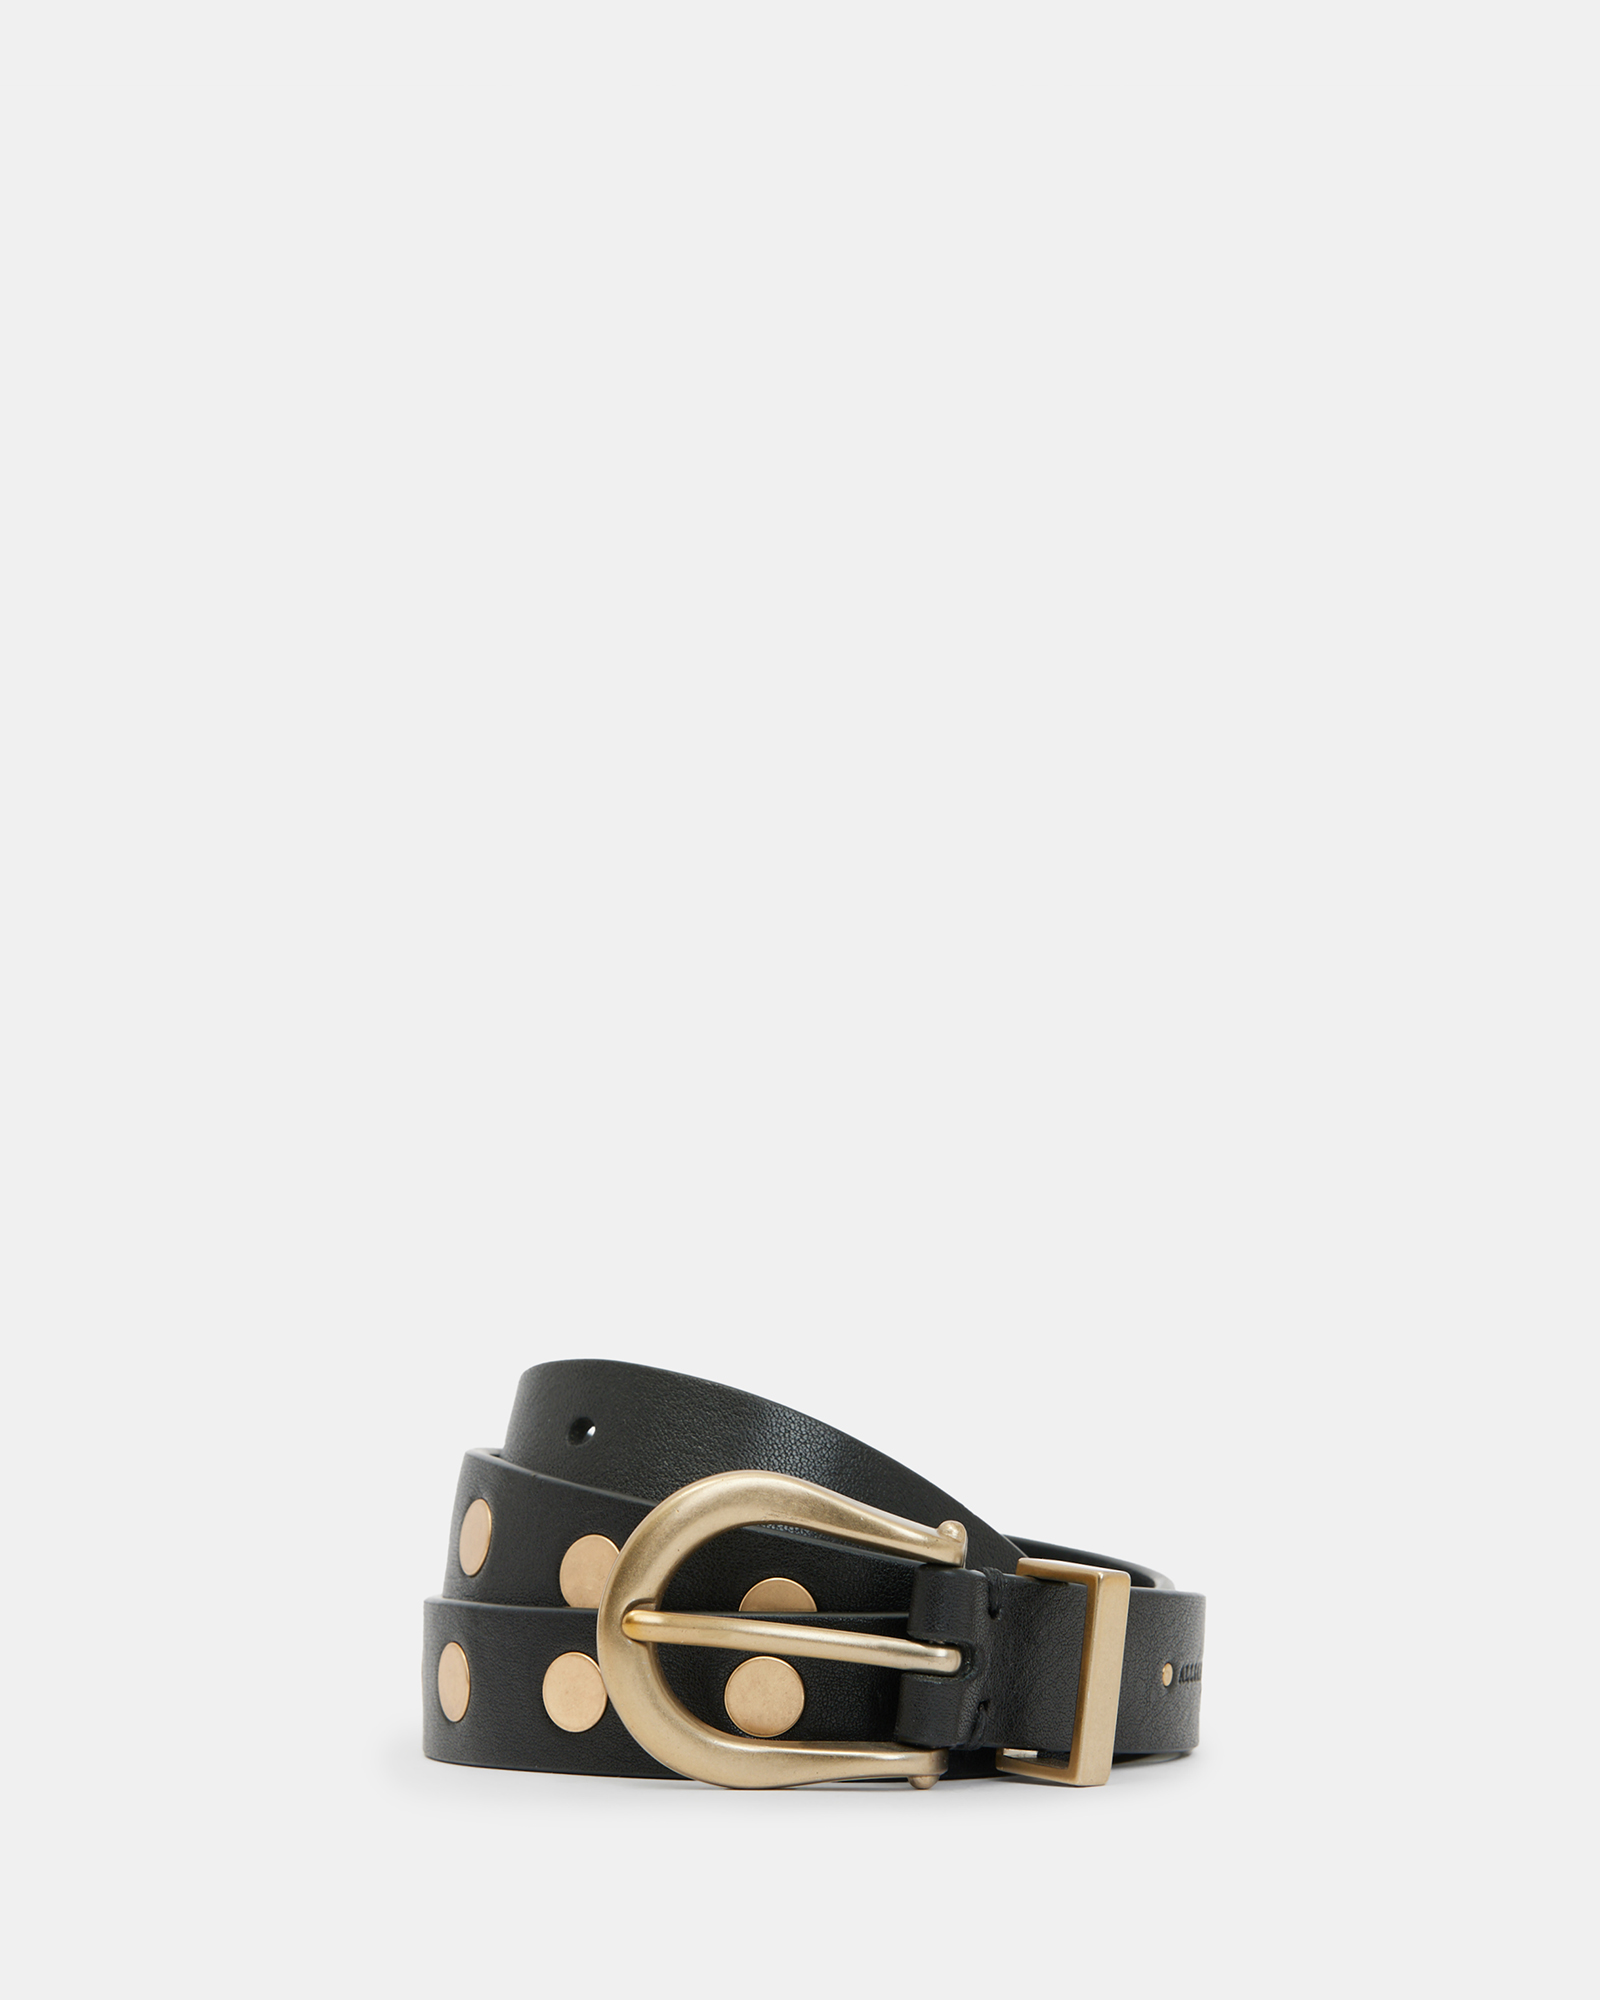 Allsaints Michaela Studded Leather Belt In Black/warm Brass